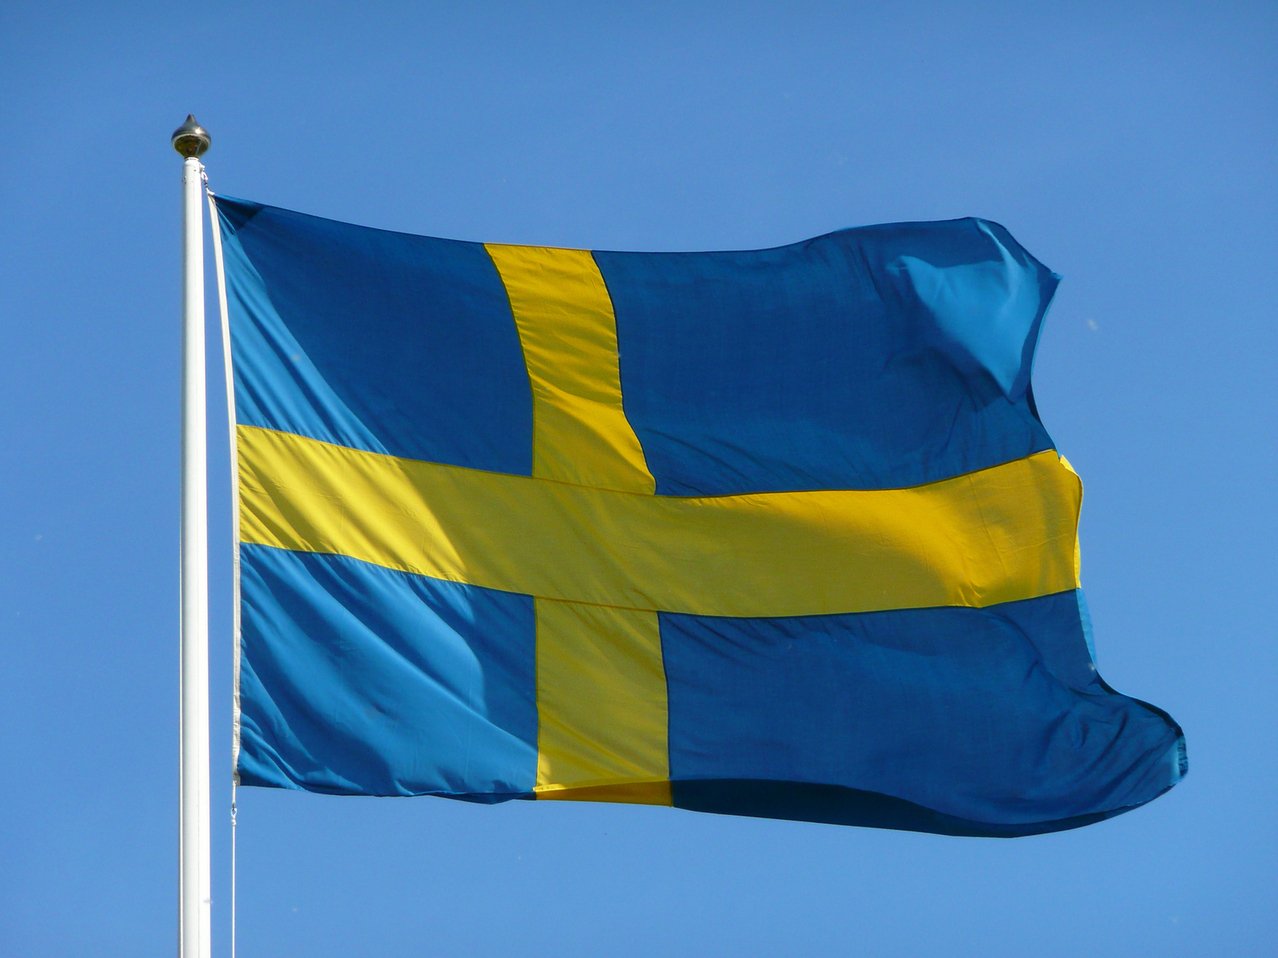 Suedia: Companiile şi gospodăriile primesc 5,8 miliarde de dolari pentru a compensa majorarea facturilor la energie